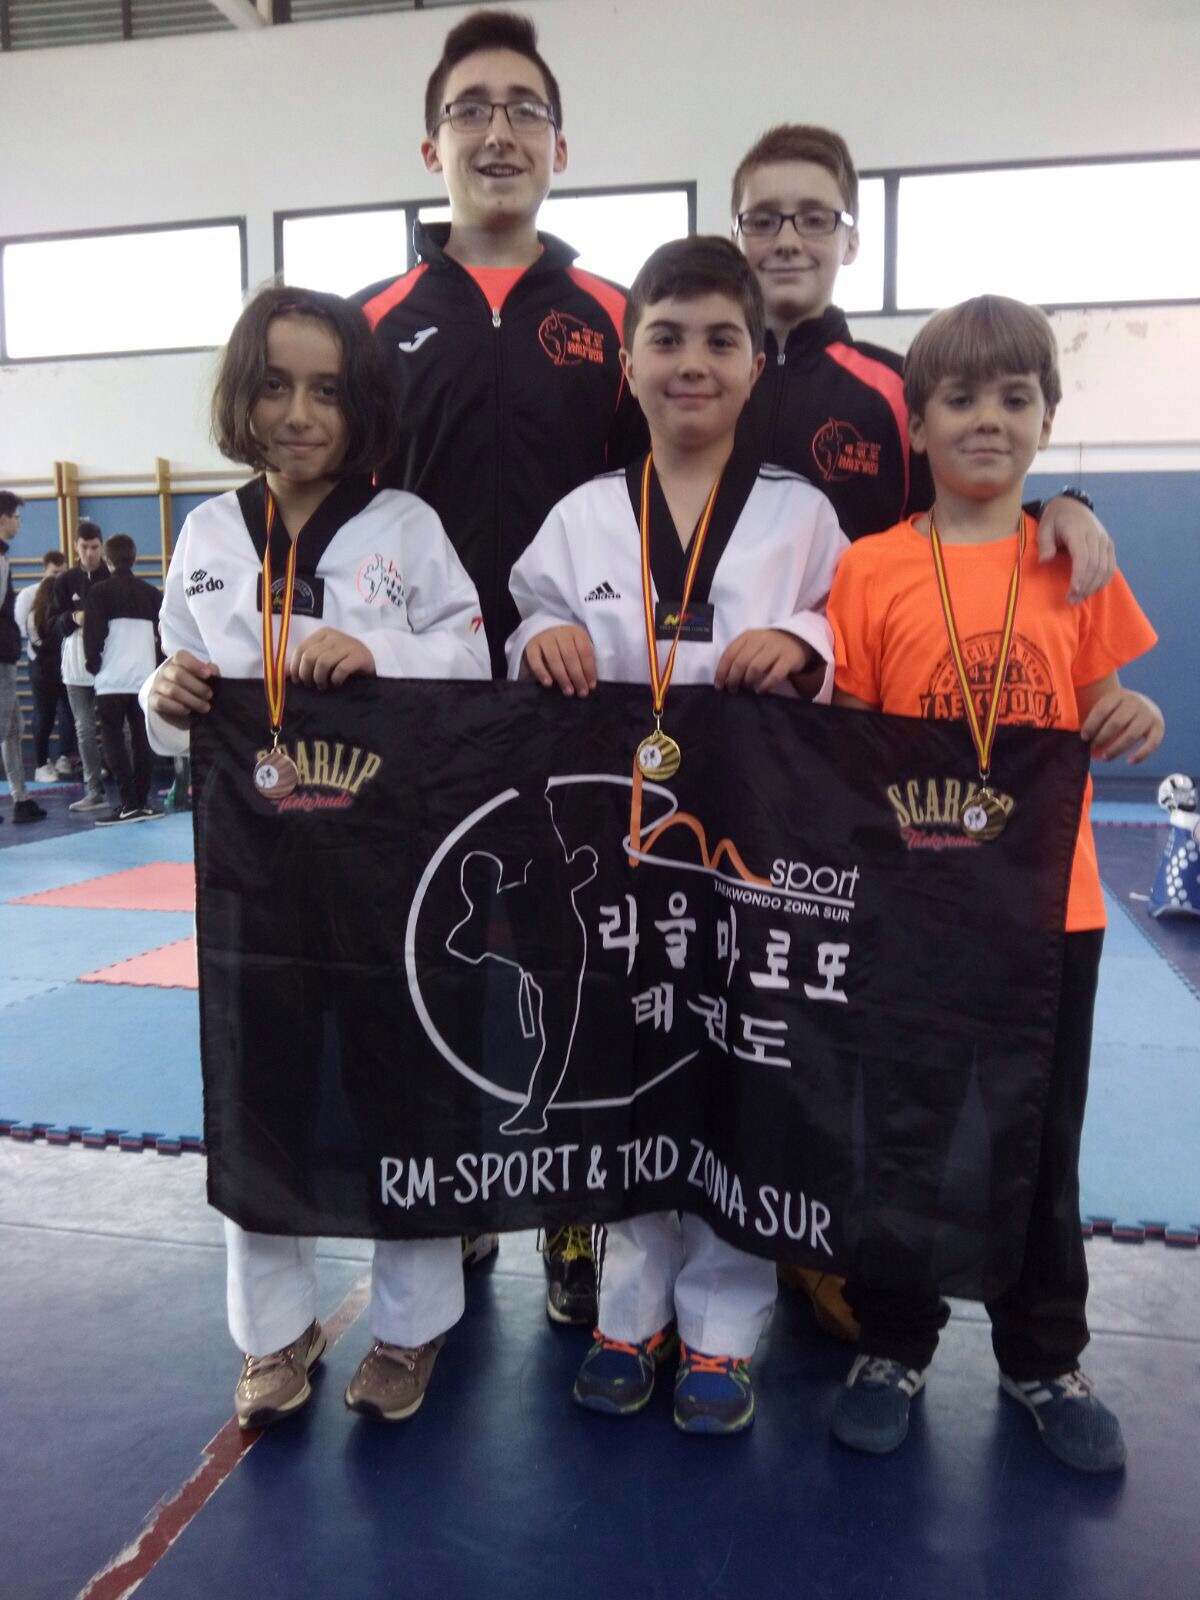 Pleno de medallas para la cantera del CD Taekwondo RM-Sport